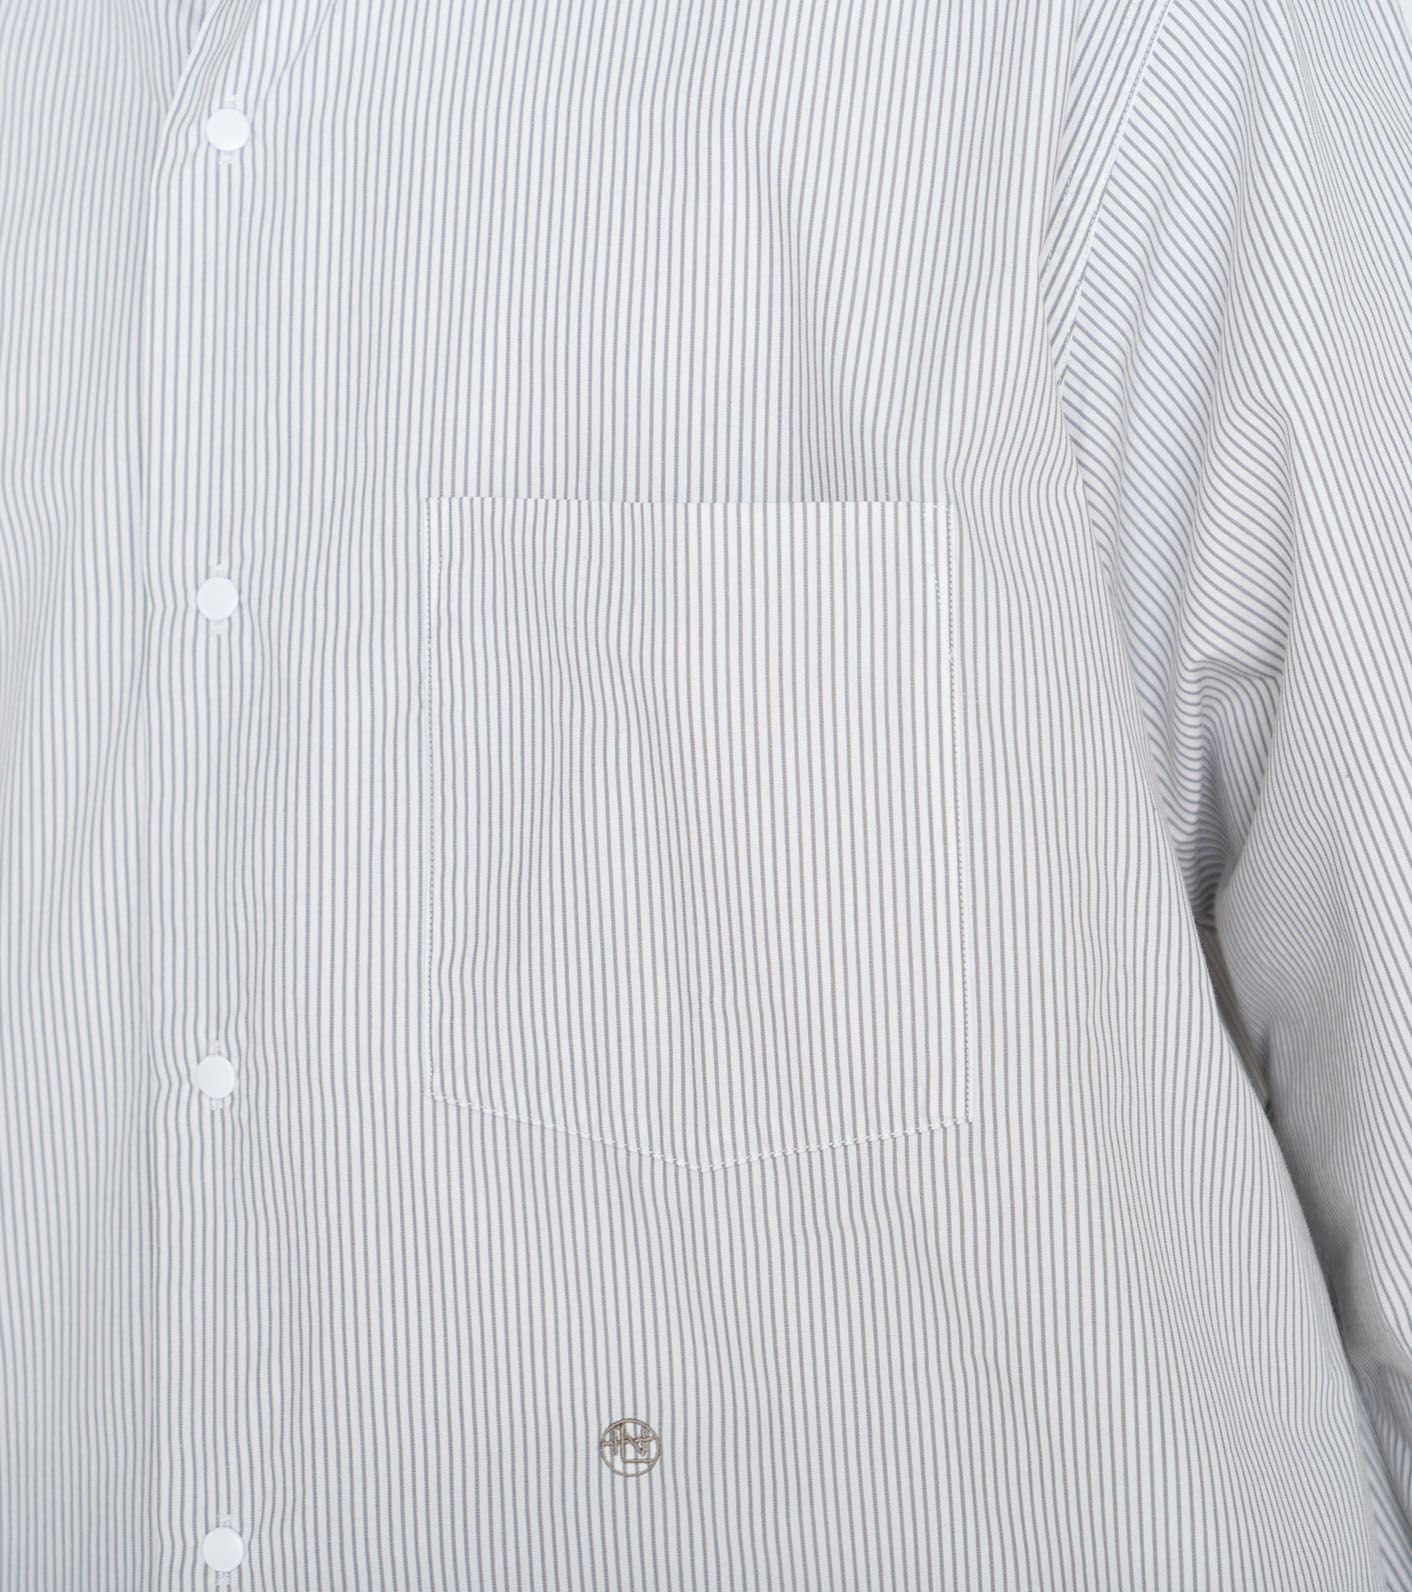 nanamica / Regular Collar Stripe Wind Shirt